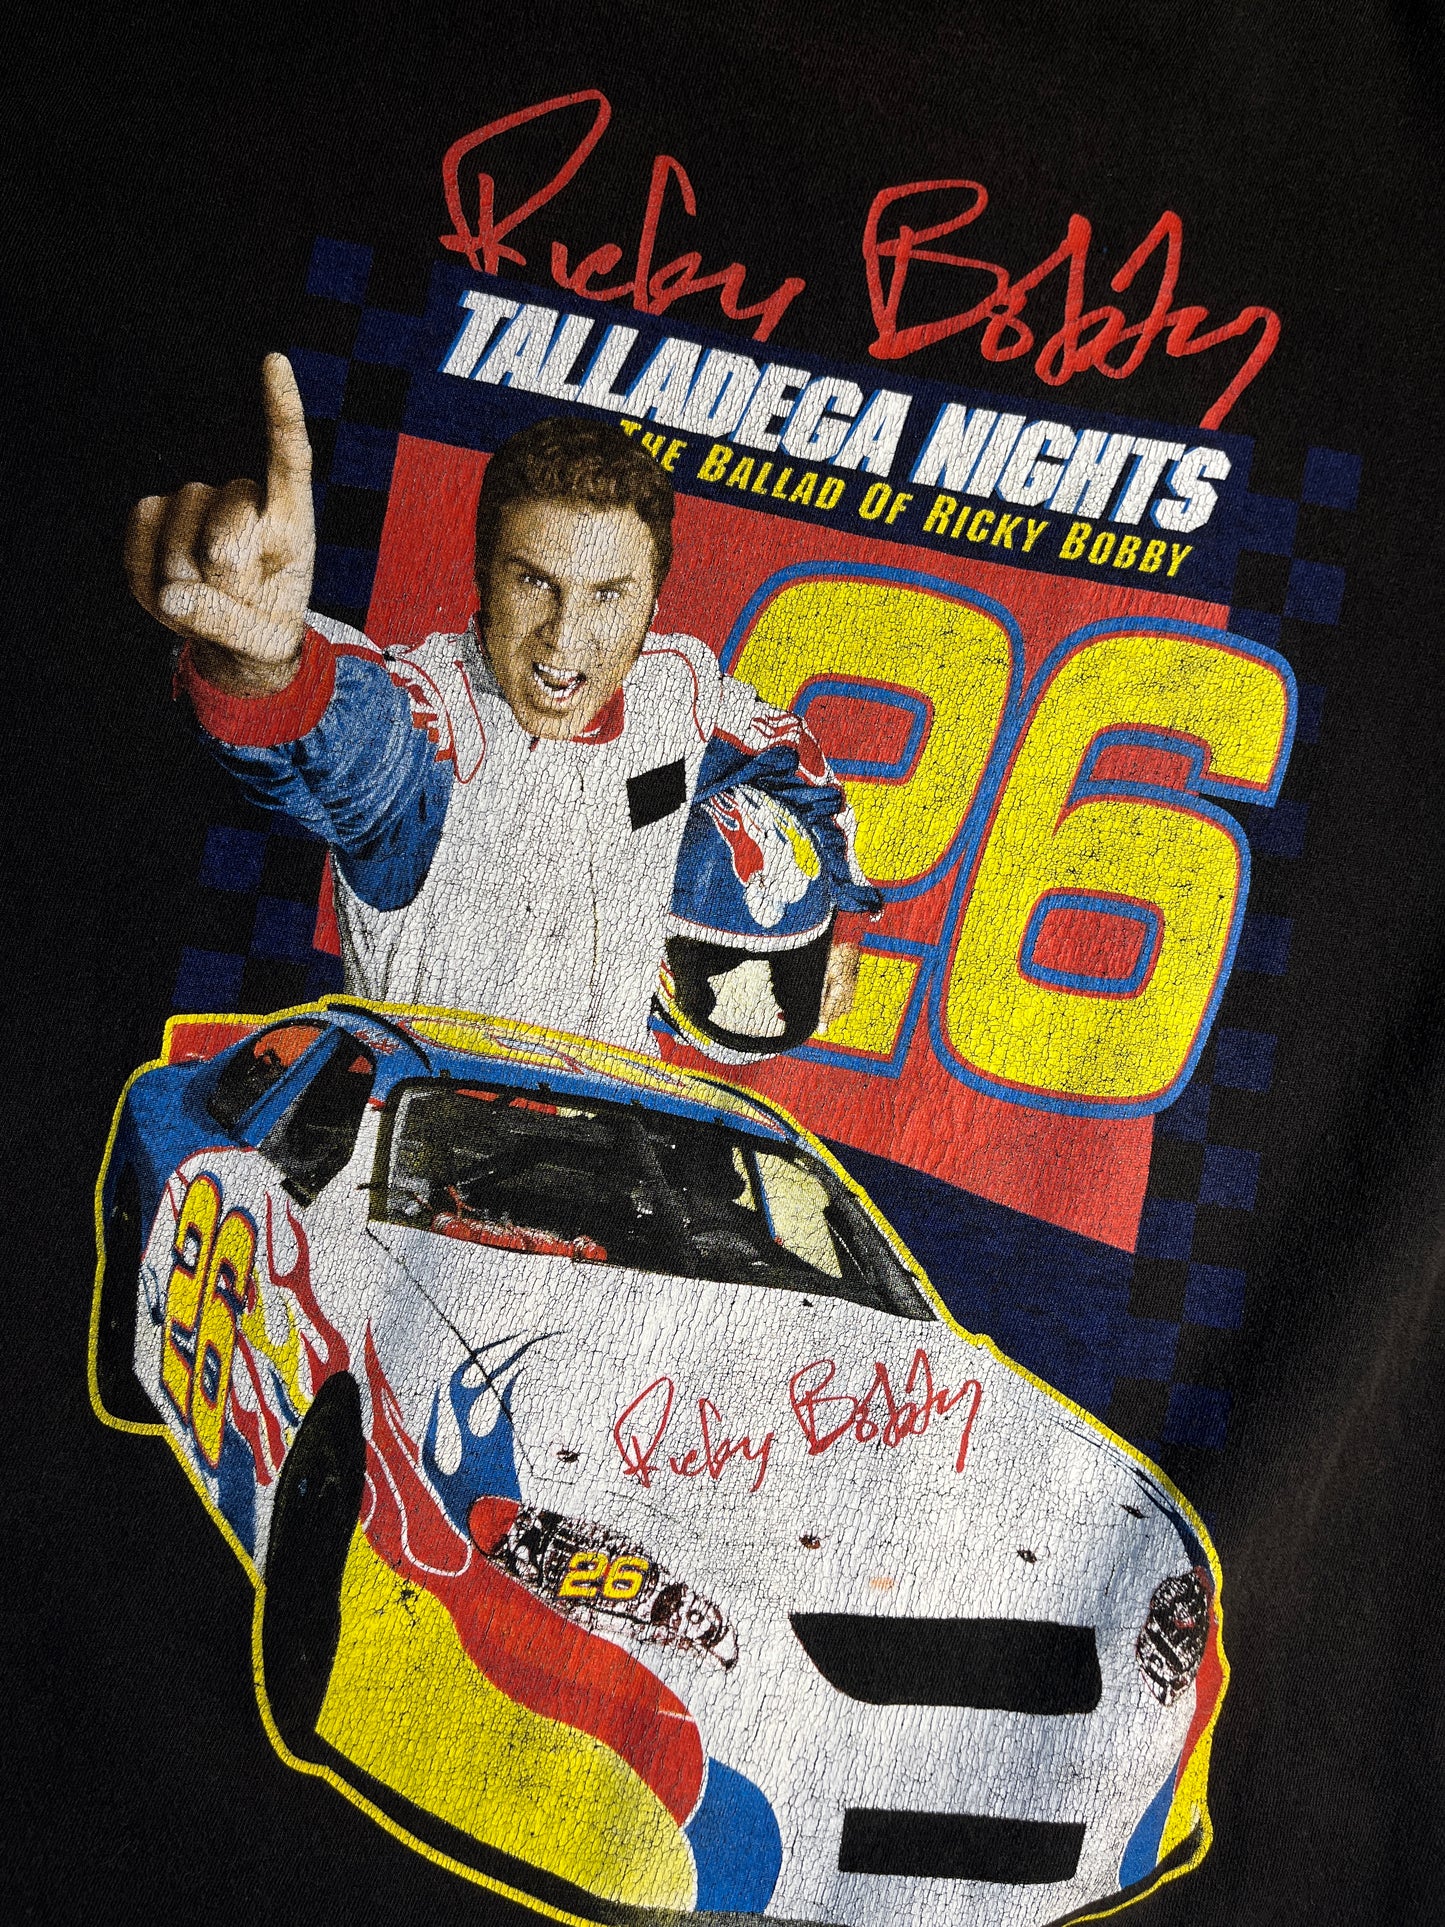 Vintage Talladega Nights T-Shirt Will Ferrel Ricky BOBBY